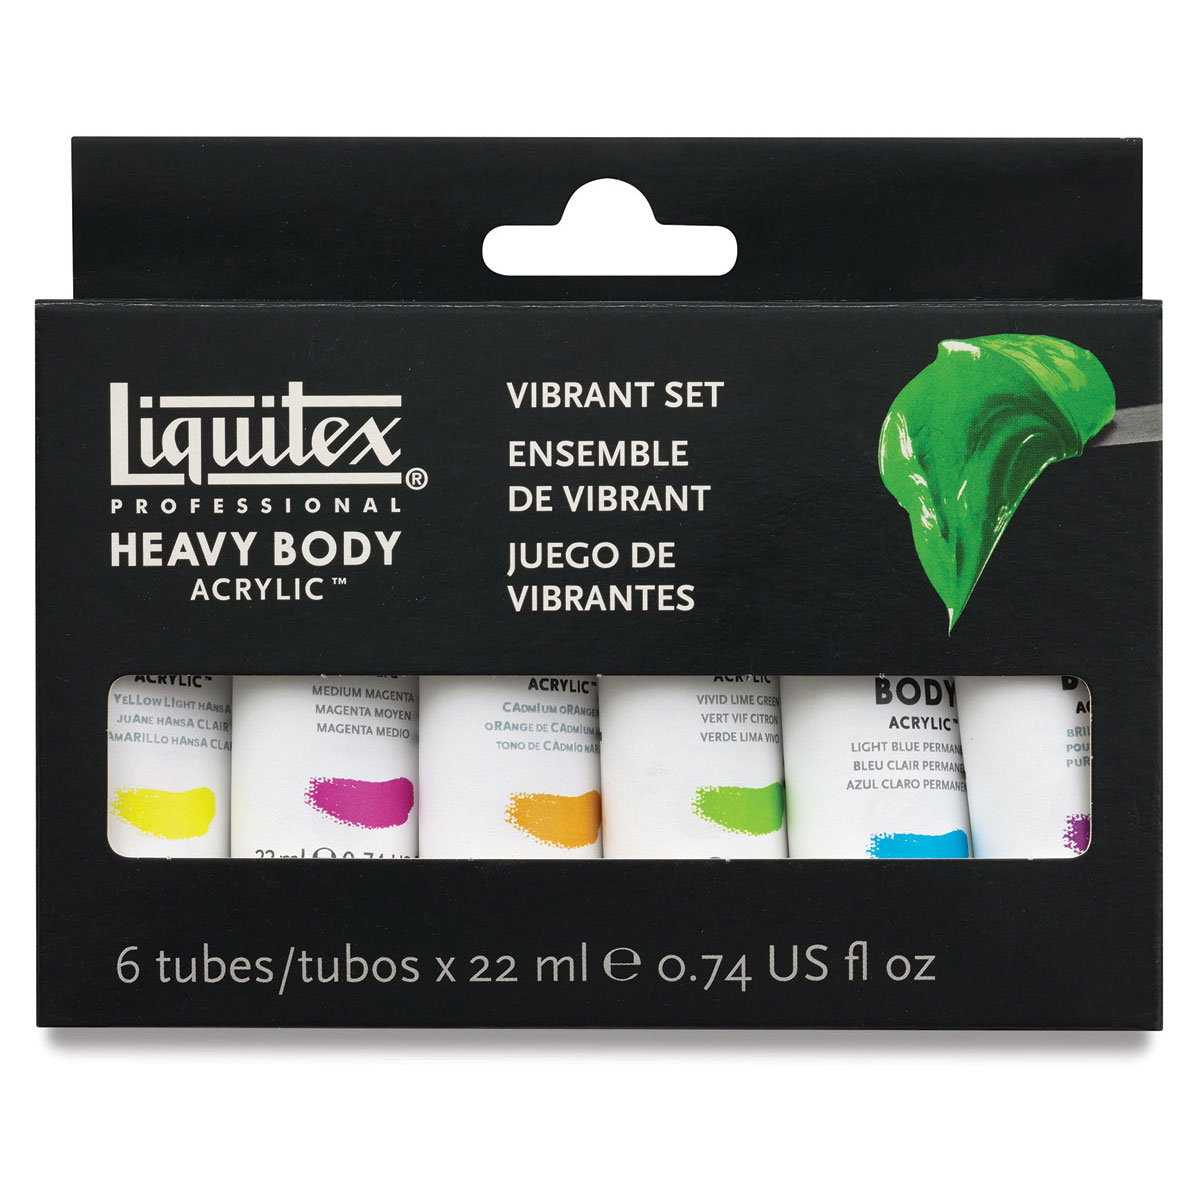 Liquitex Heavy Body Artist Acrylics - Vibrant Set of 6, 22 ml tubes